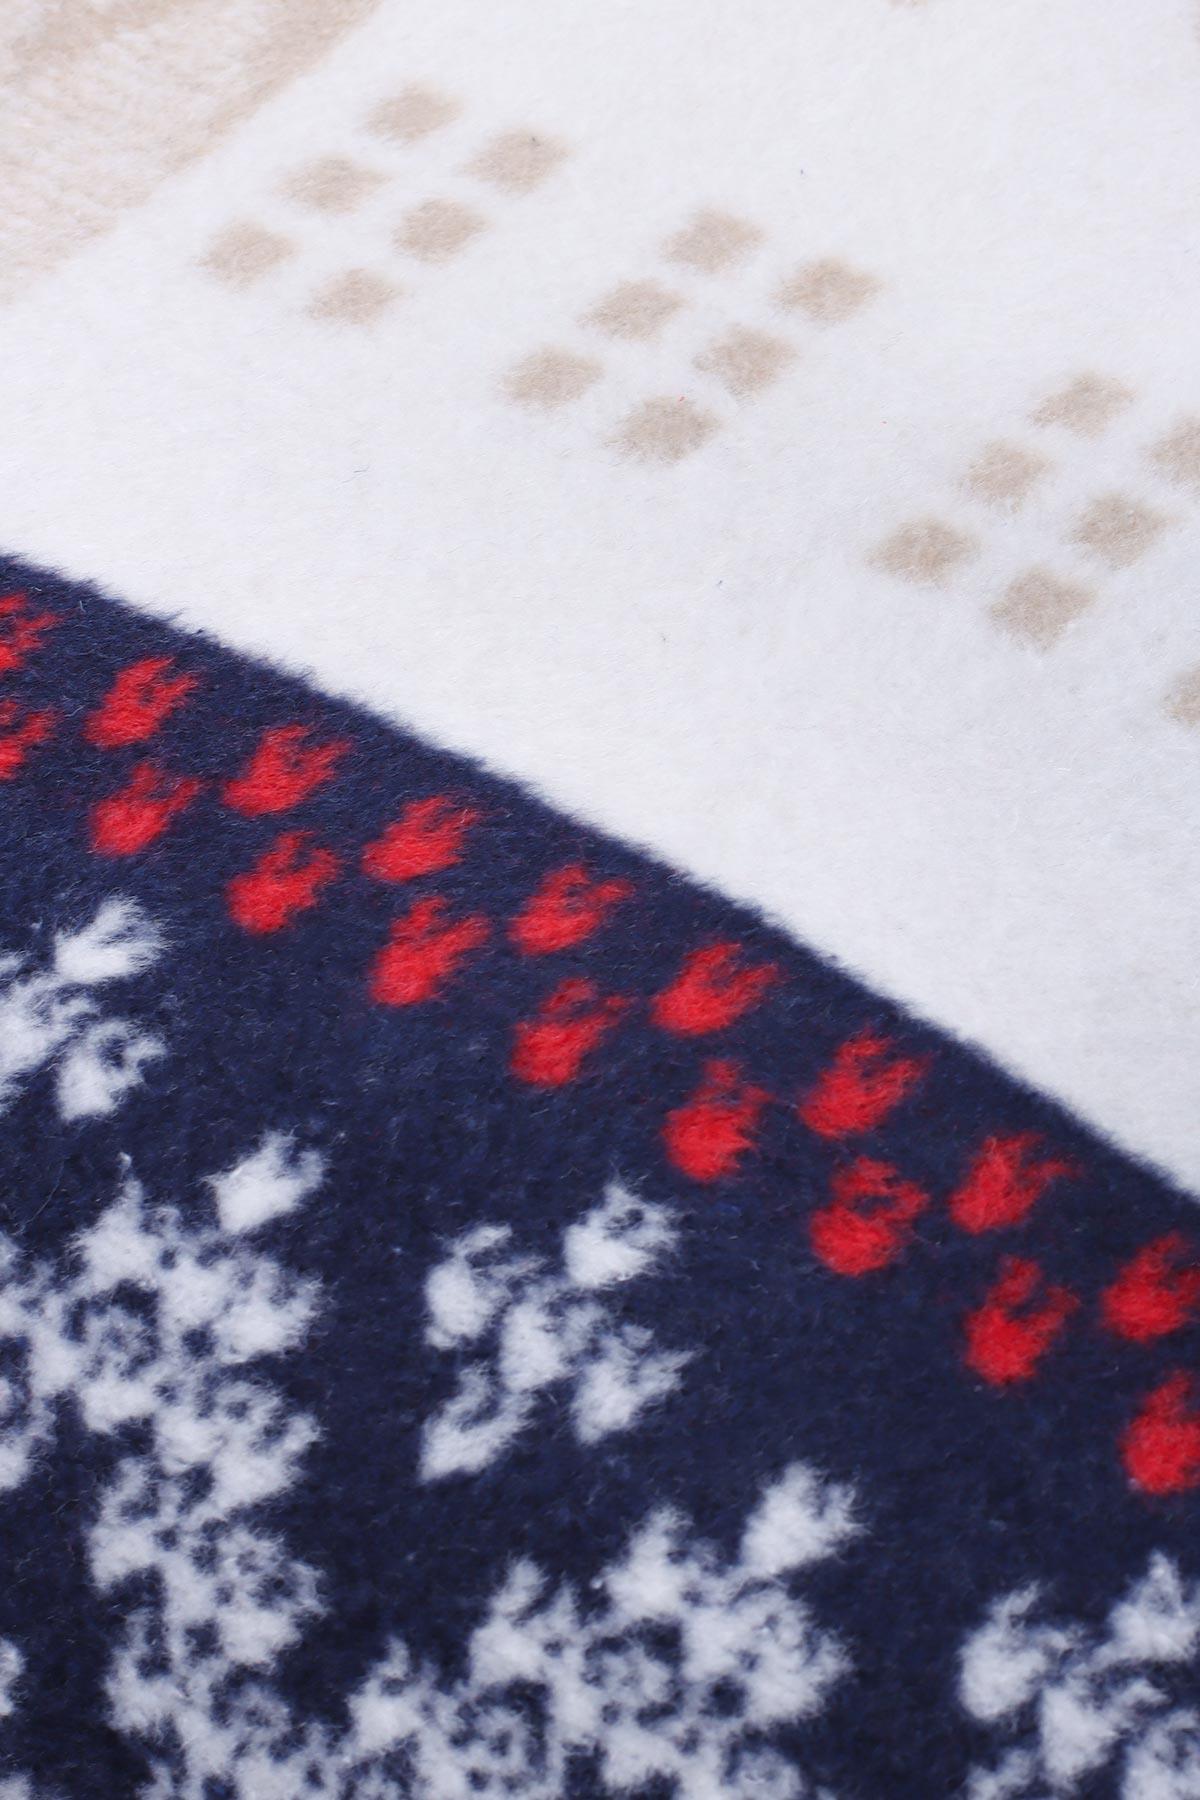 aksu pamuklu battaniye geyik desenli yilbasi hediyesi bordo 150 200 cm sicak su tobasi hediye 119519.jpg